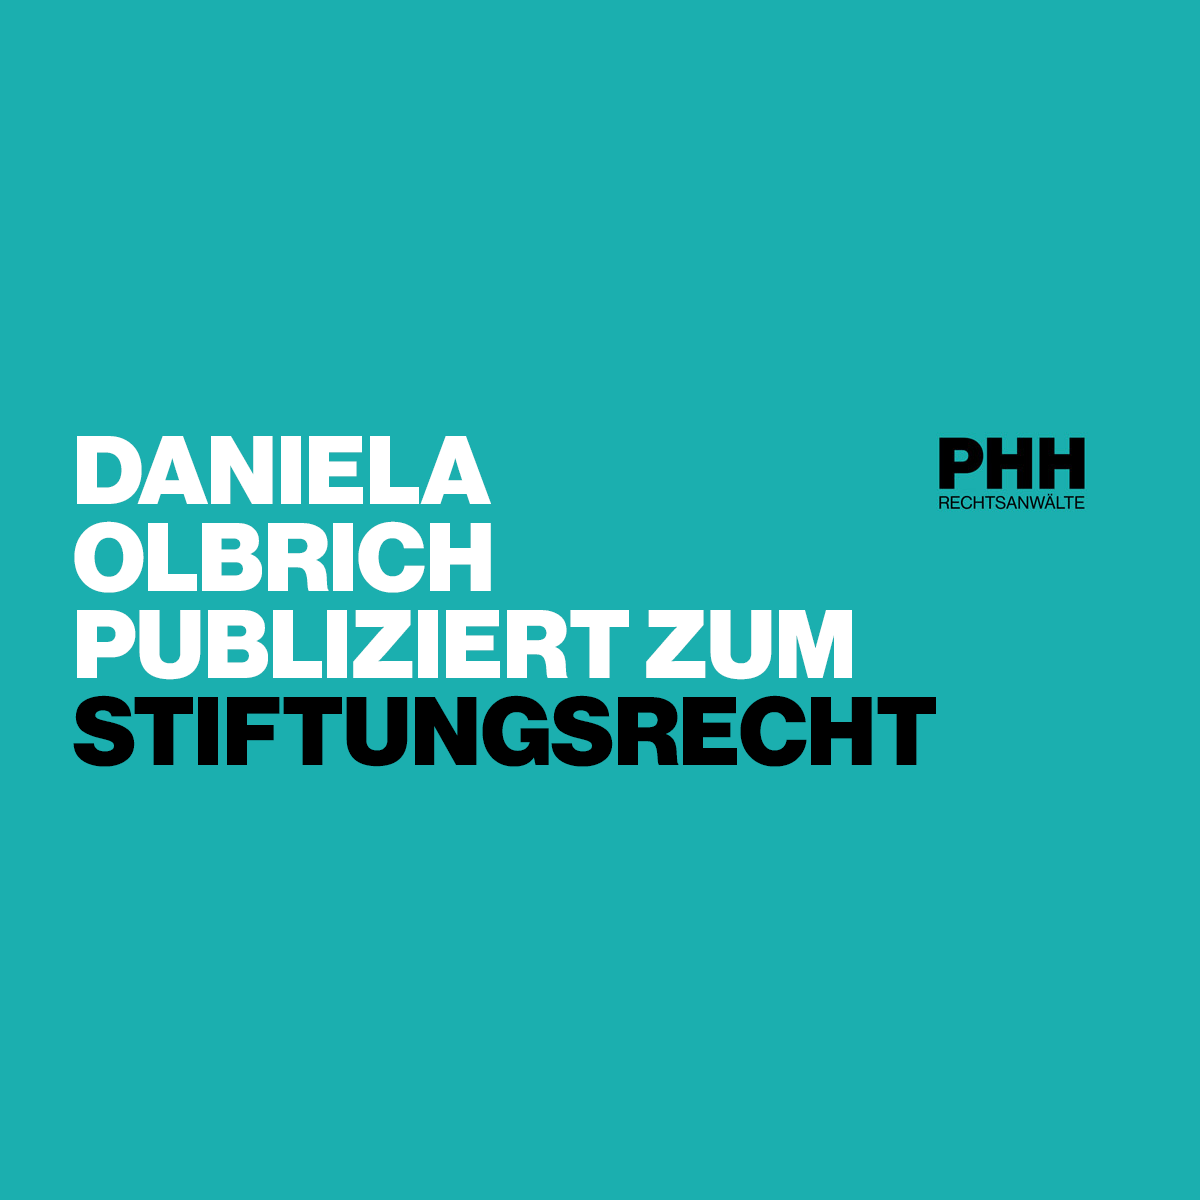 Daniela Olbrich publiziert zum Stiftungsrecht